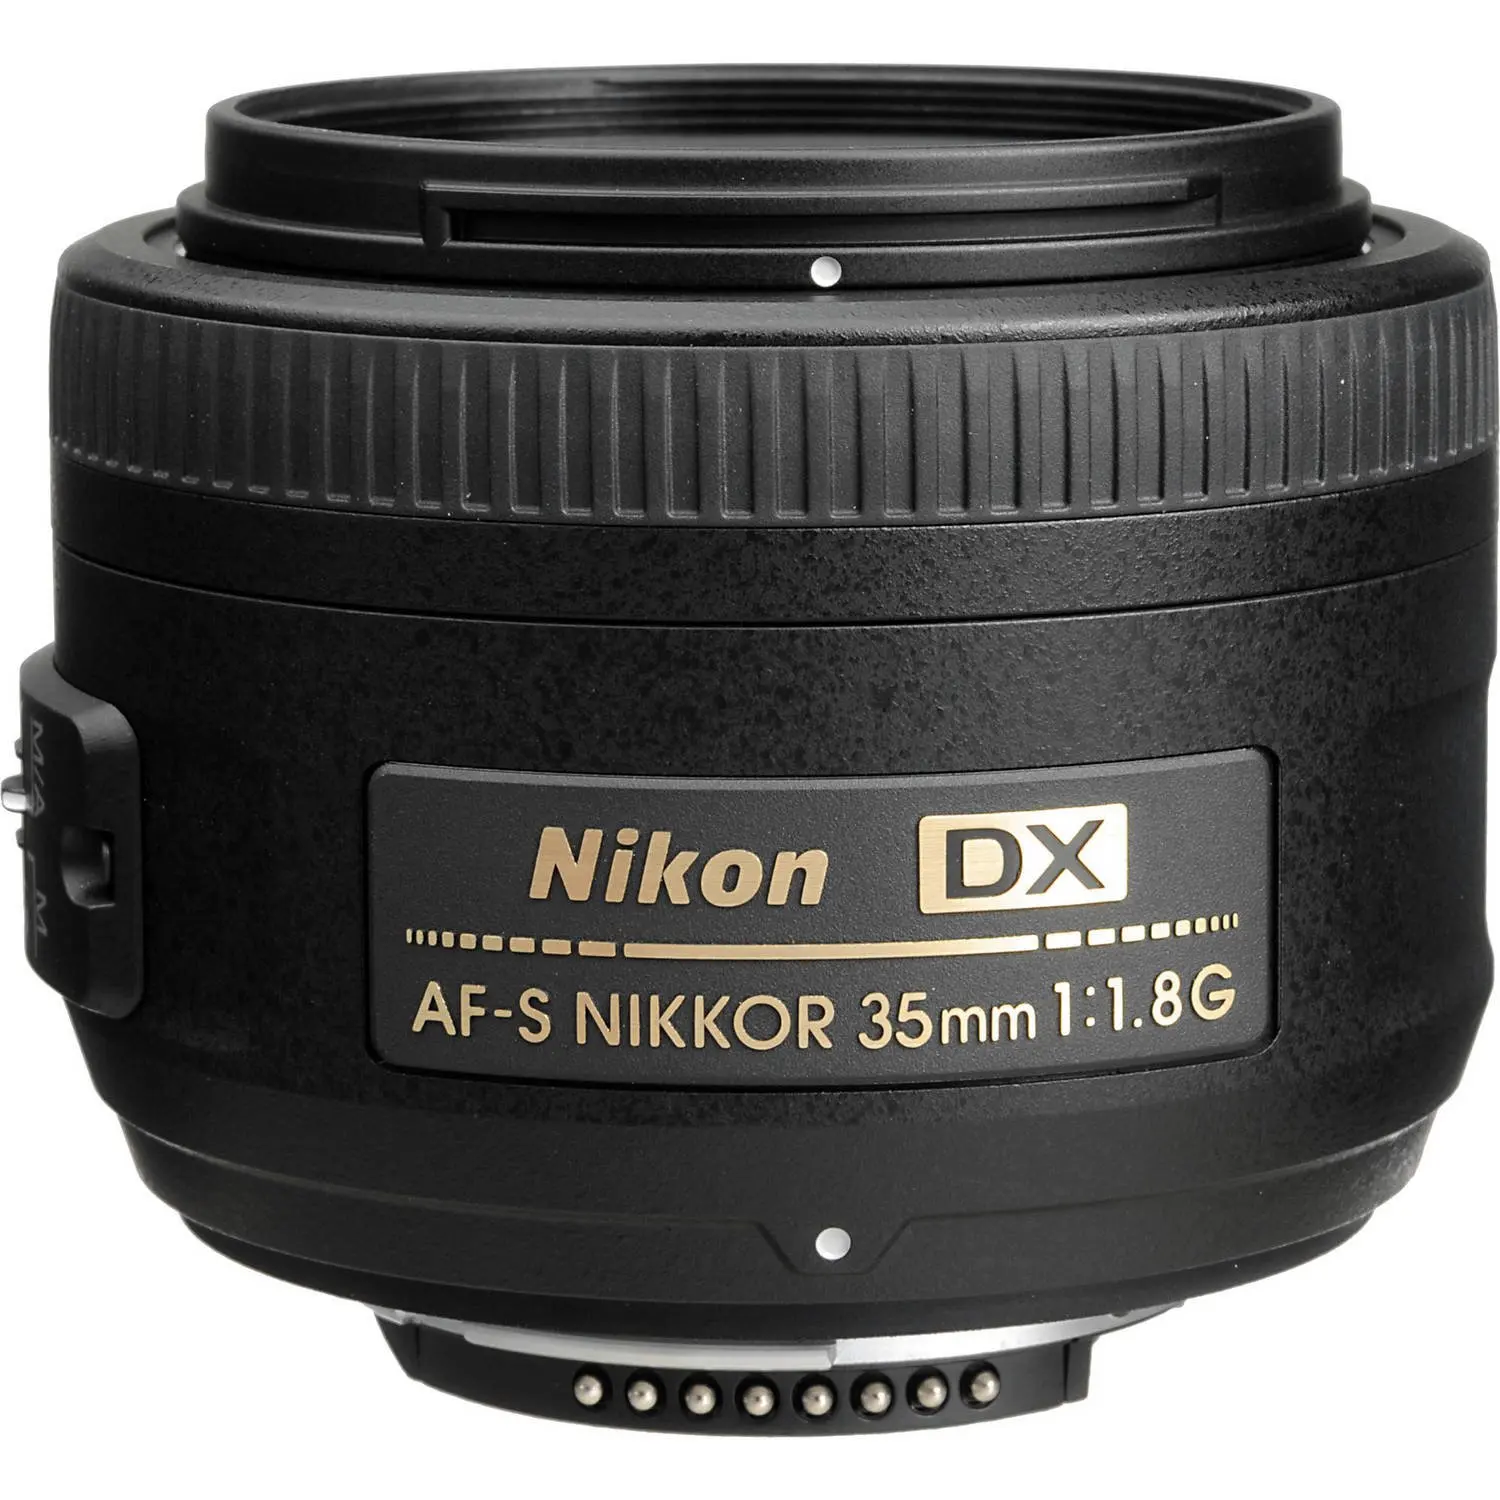 

Nikon AF-S DX NIKKOR 35mm f/1.8G Lens with Auto Focus for Nikon DSLR Cameras